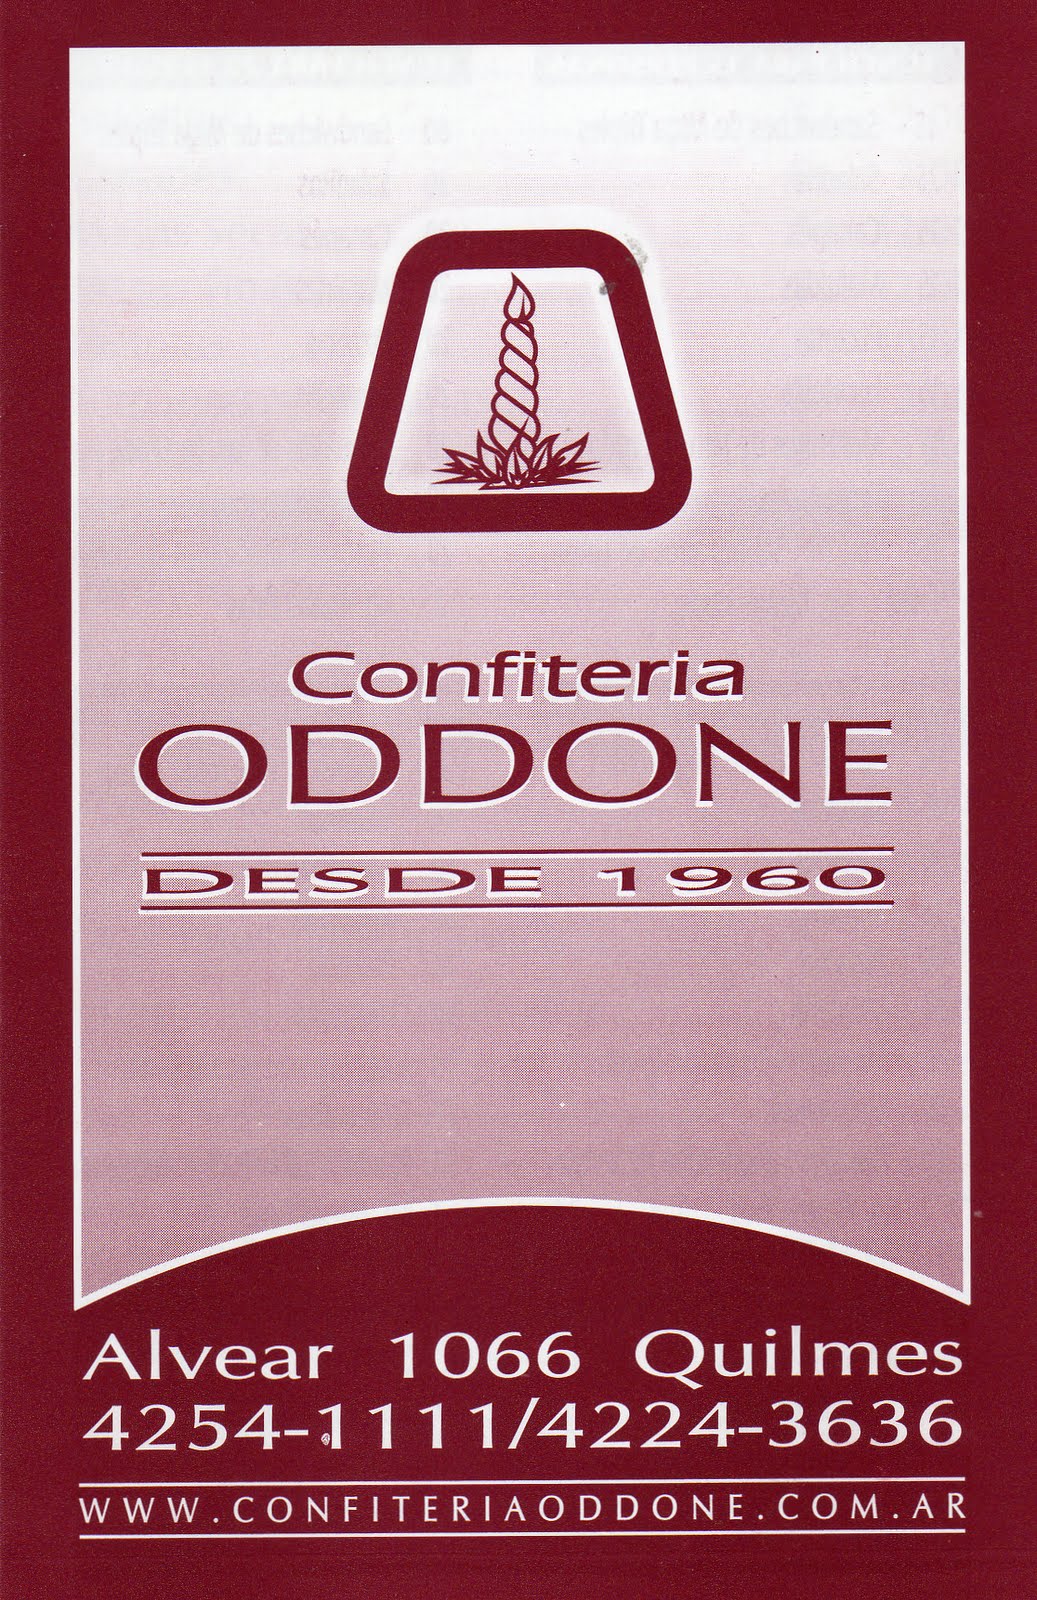 CONFITERIA ODDONE